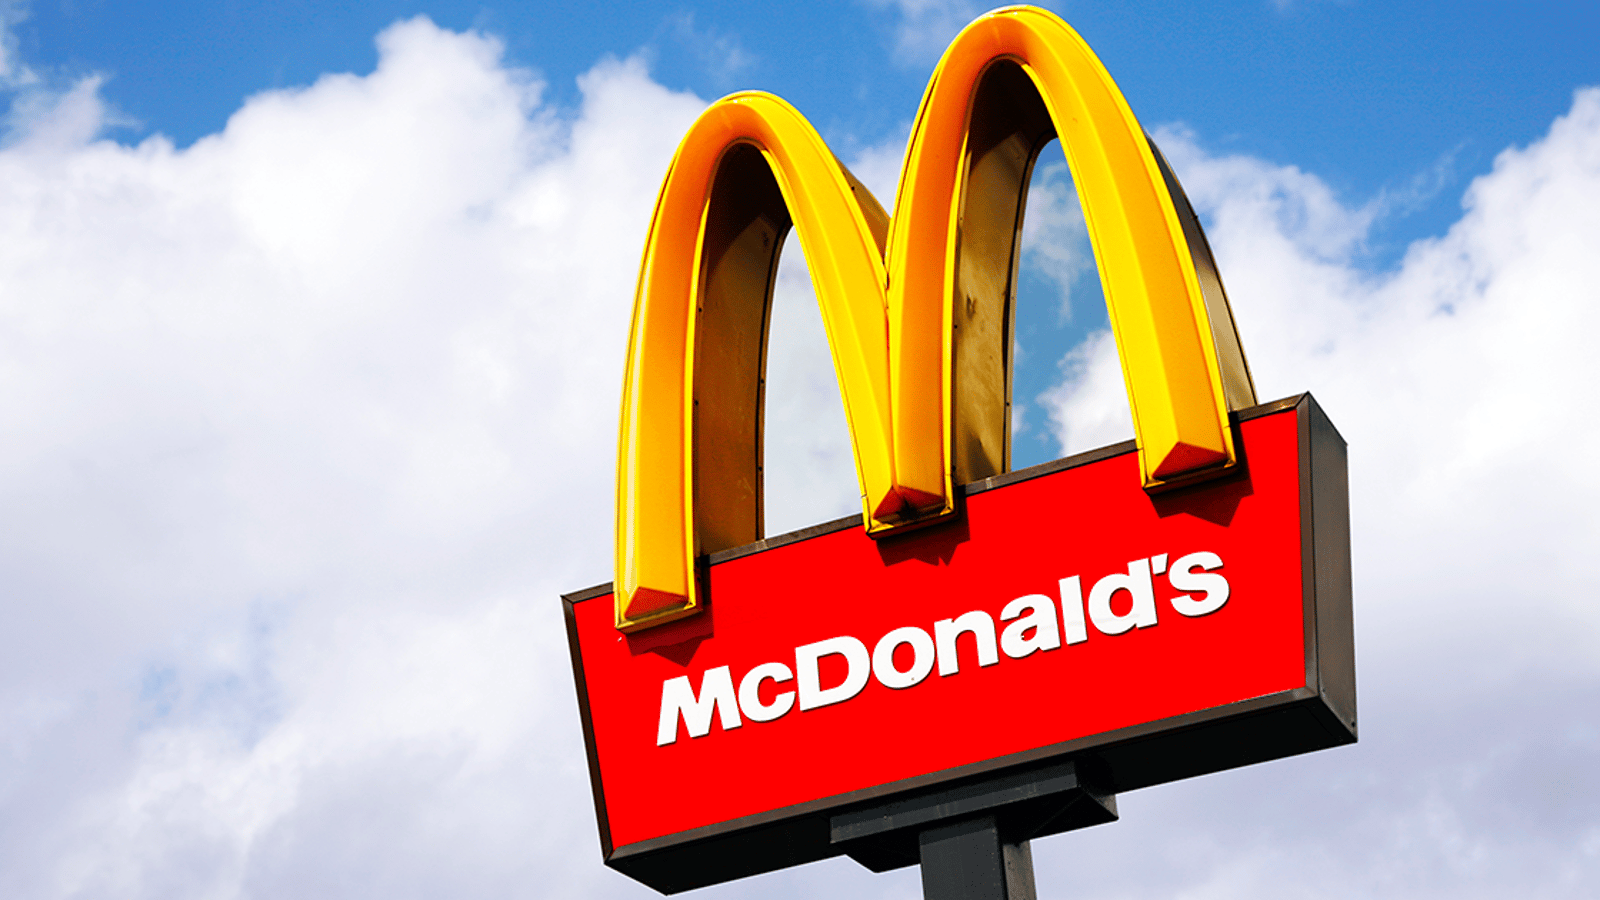 Une femme raconte l'expérience cauchemardesque qu'elle a vécue dans un McDonald's du Québec